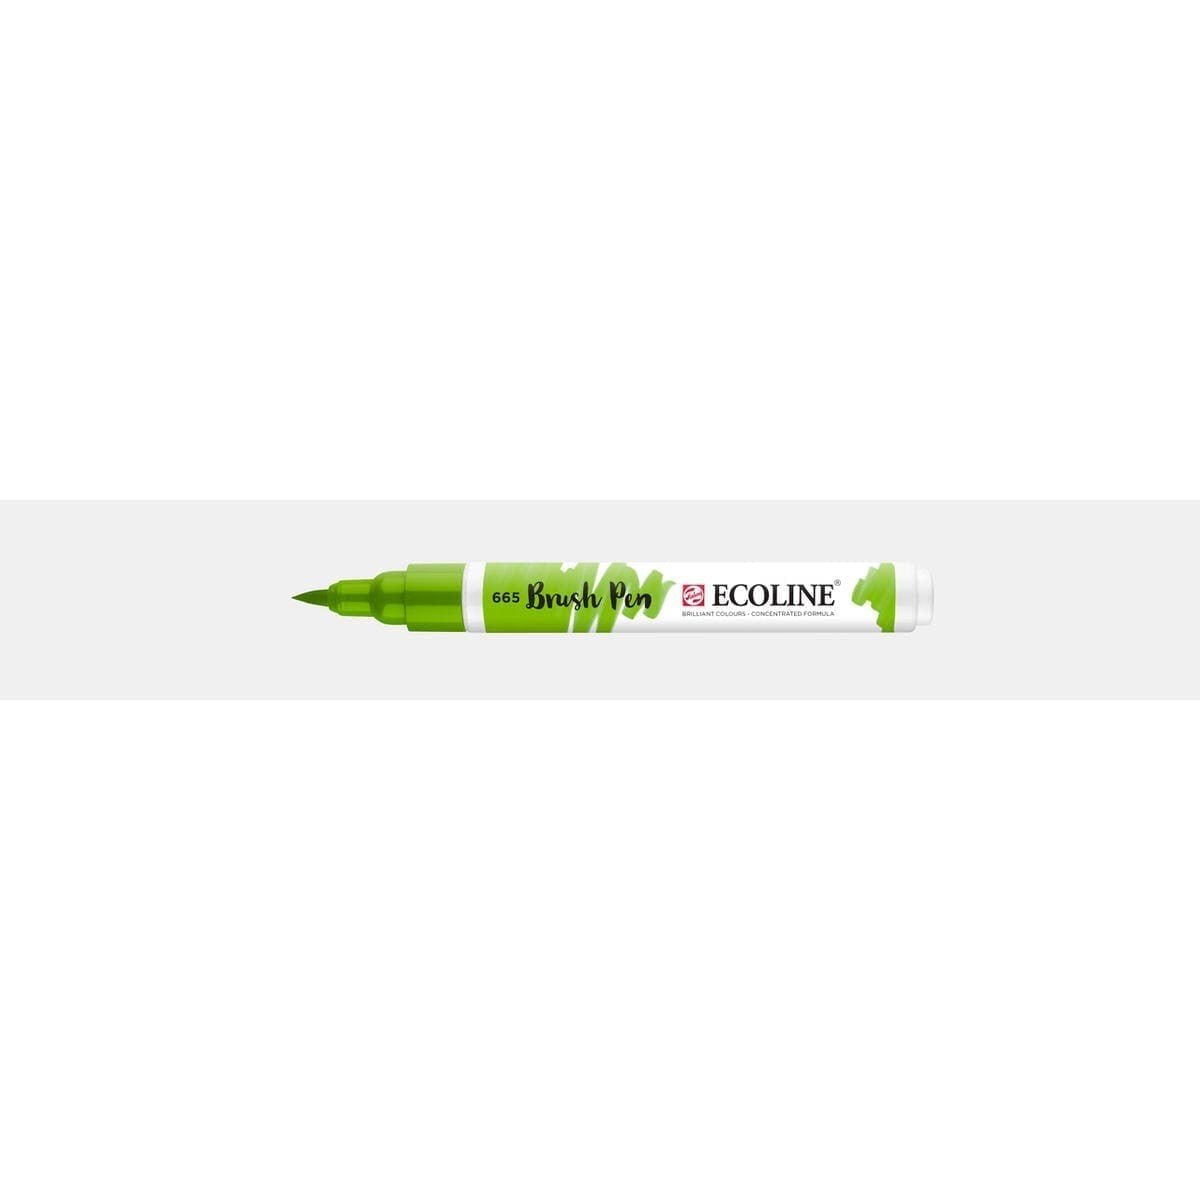 Ecoline Brush Pen - Spring green 665 - Royal Talens - Tidformera